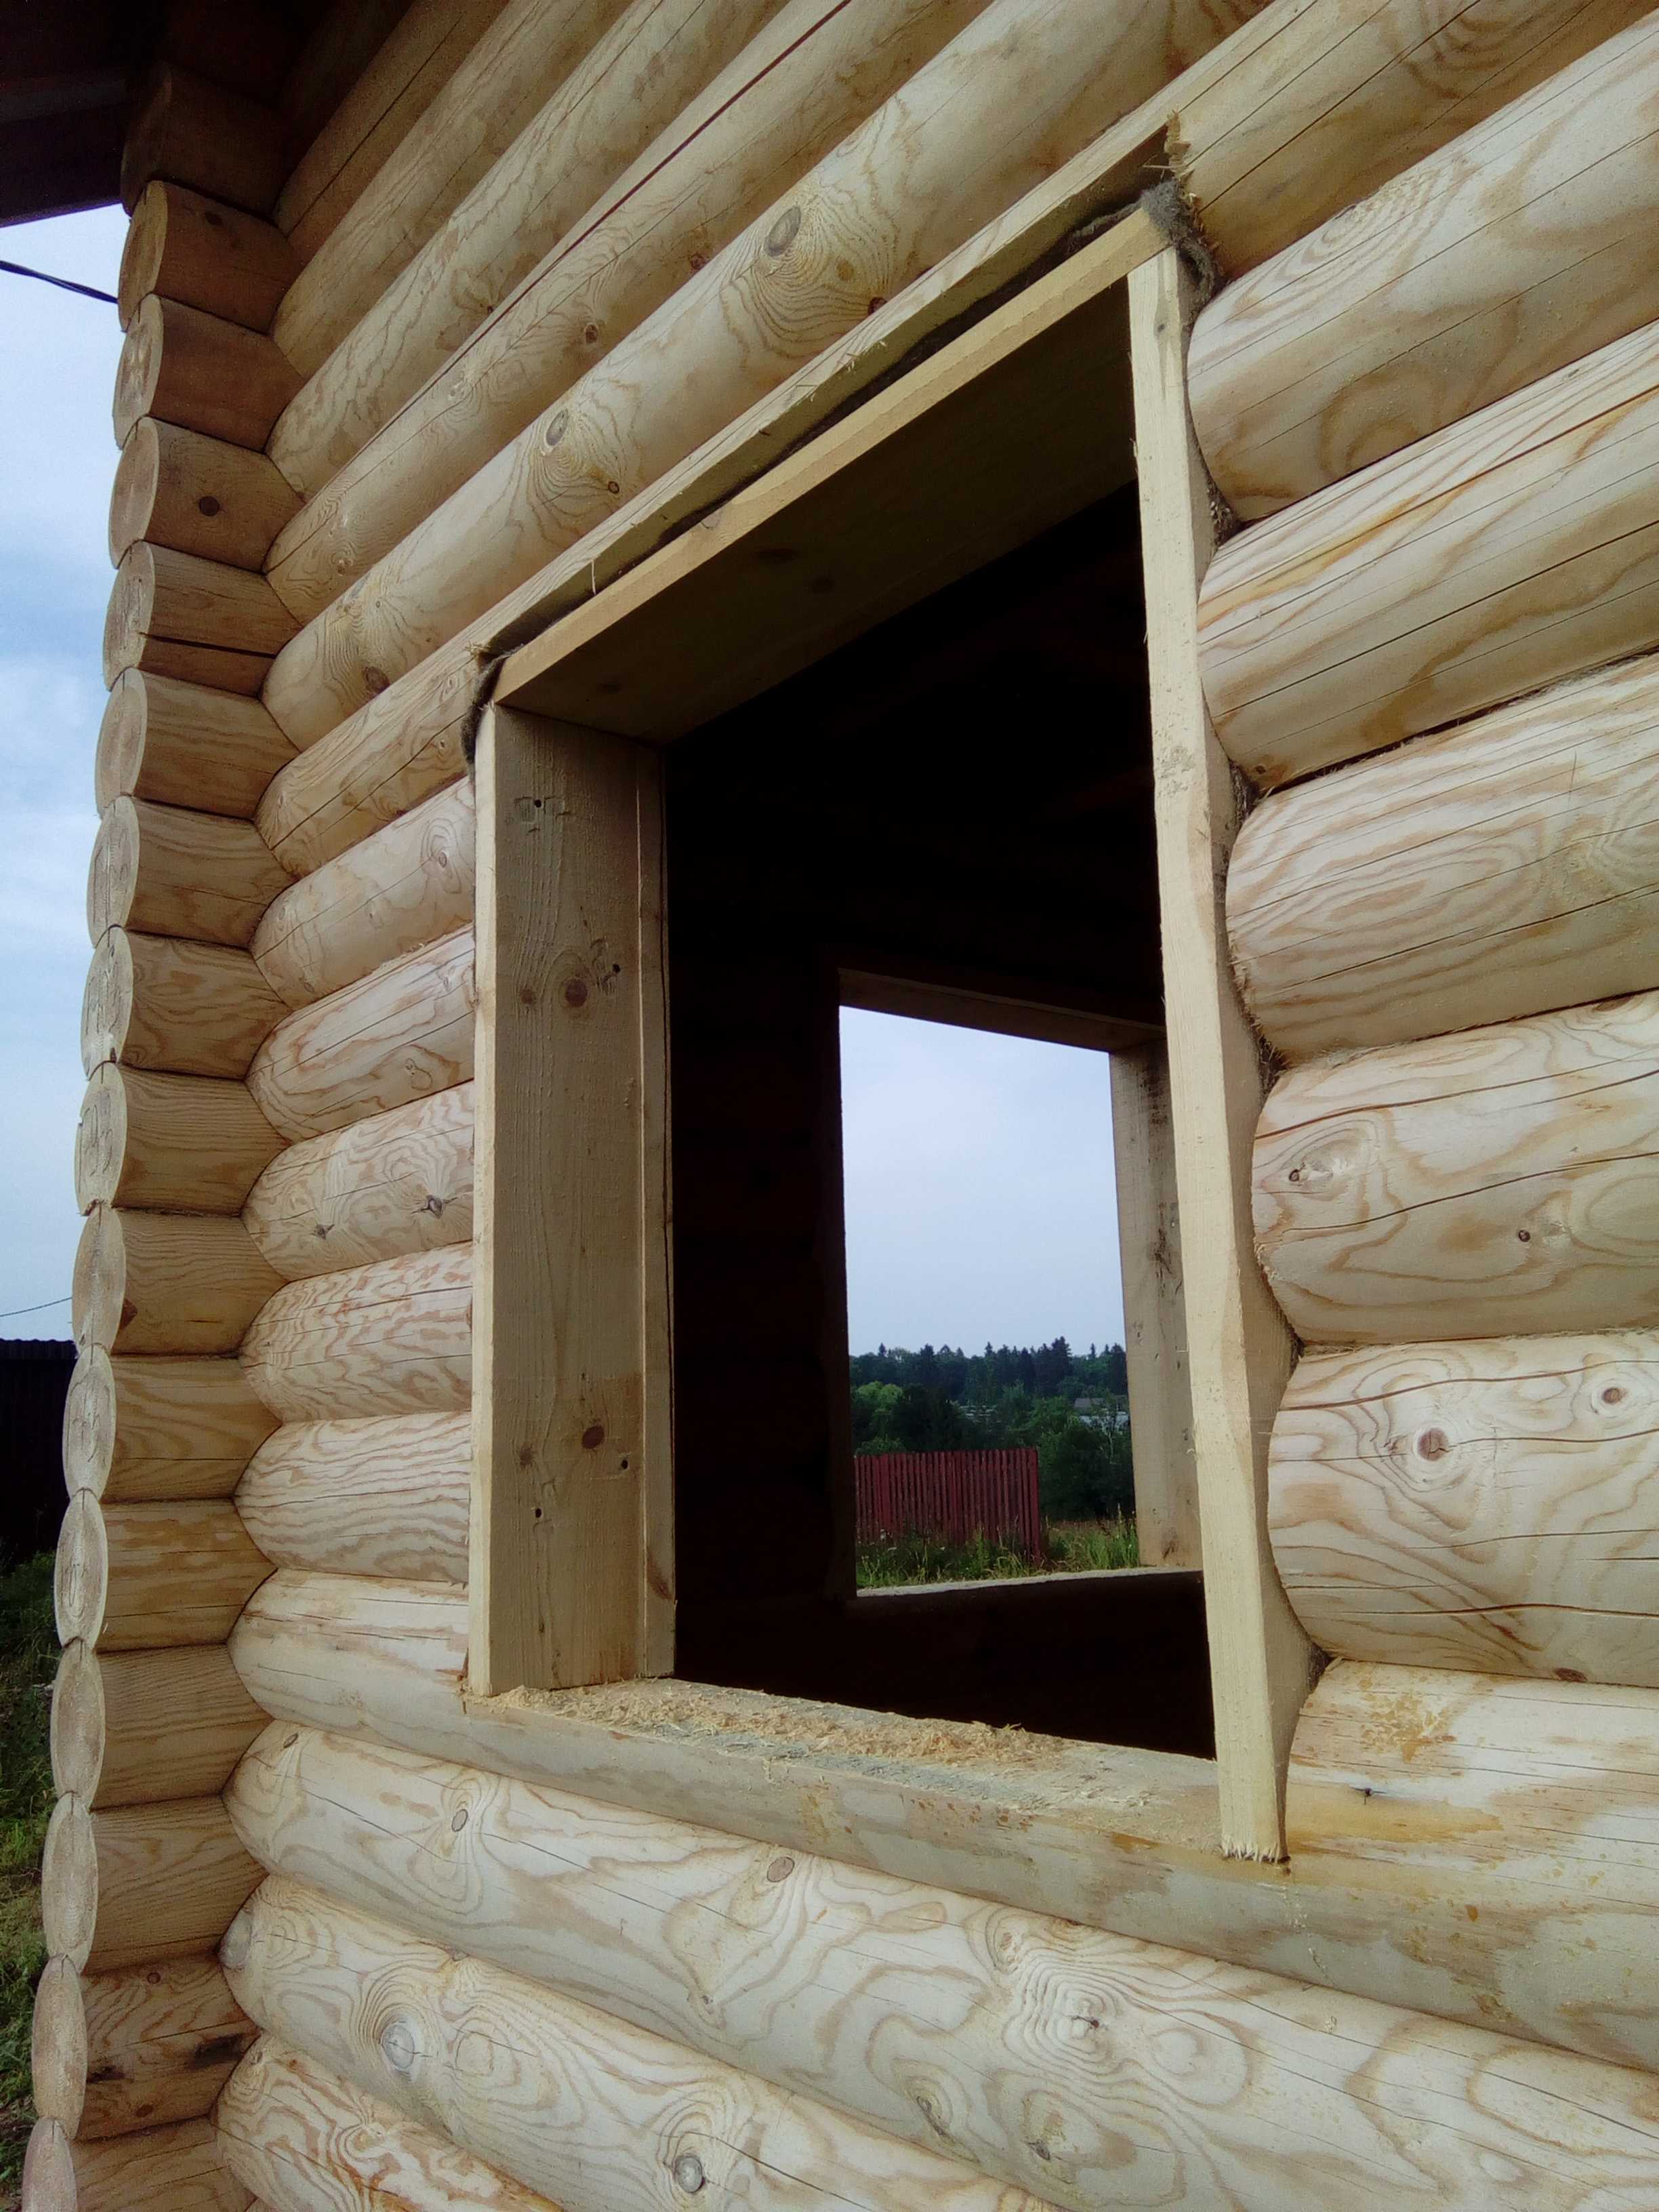 Окосячка окна - деревянная коробка формирующая оконный проем - иначе называется обсадной коробкой или обсадой Необходима во всех деревянных домах